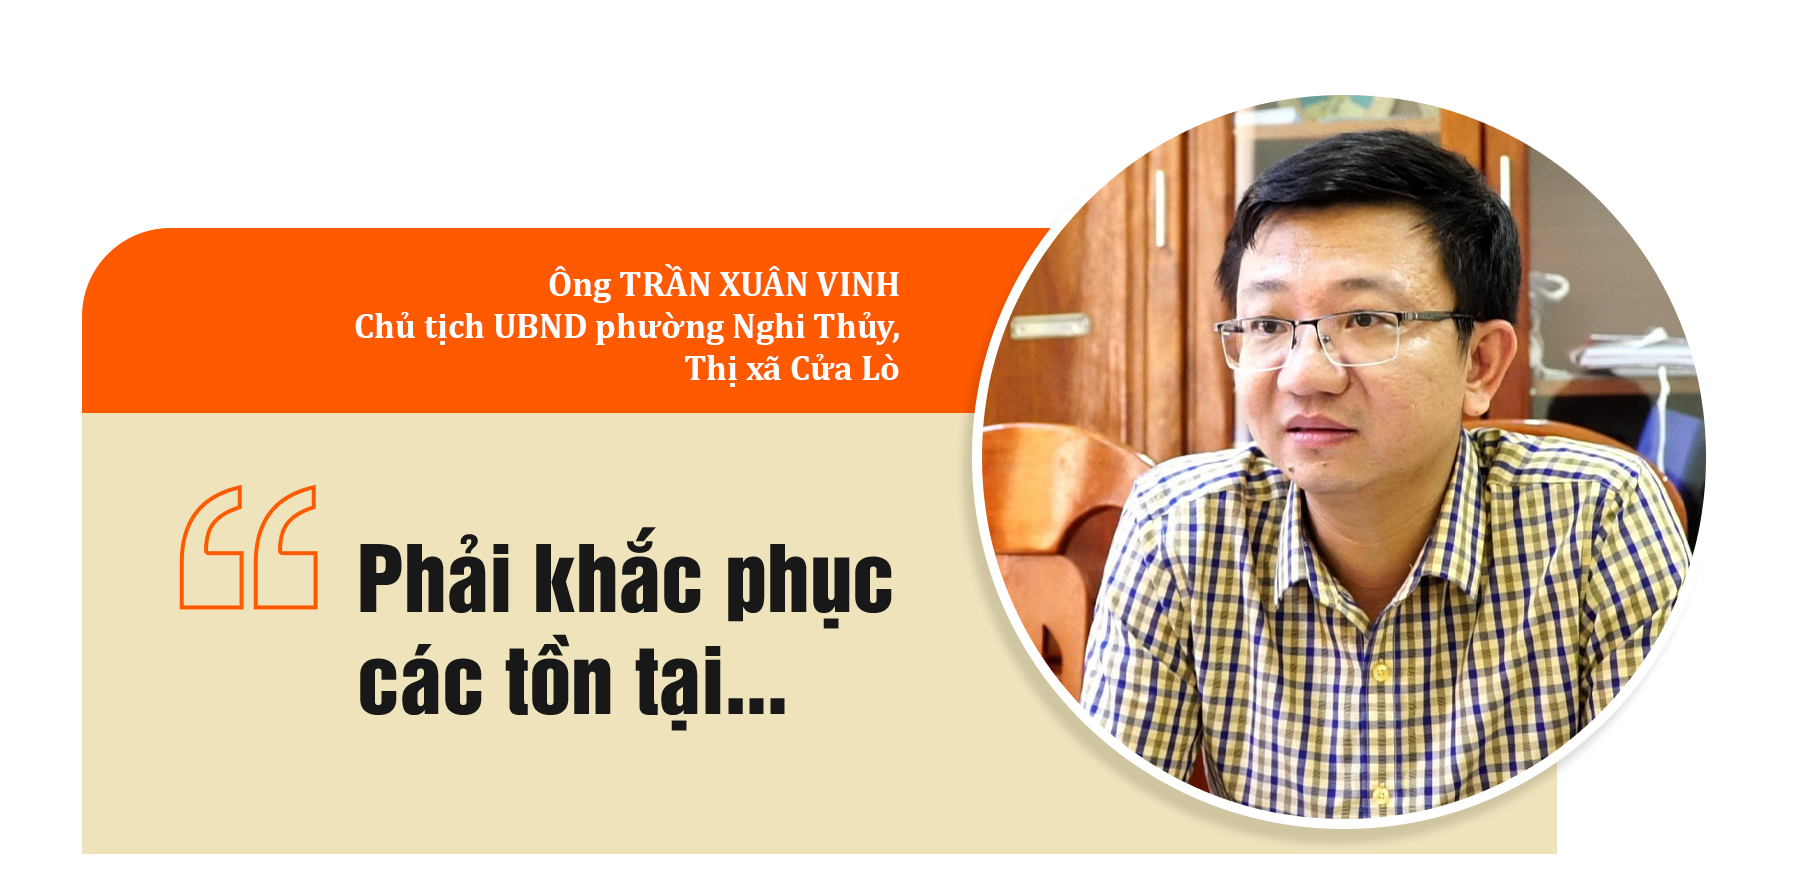 Ông Trần Xuân Vinh-Quotes.png